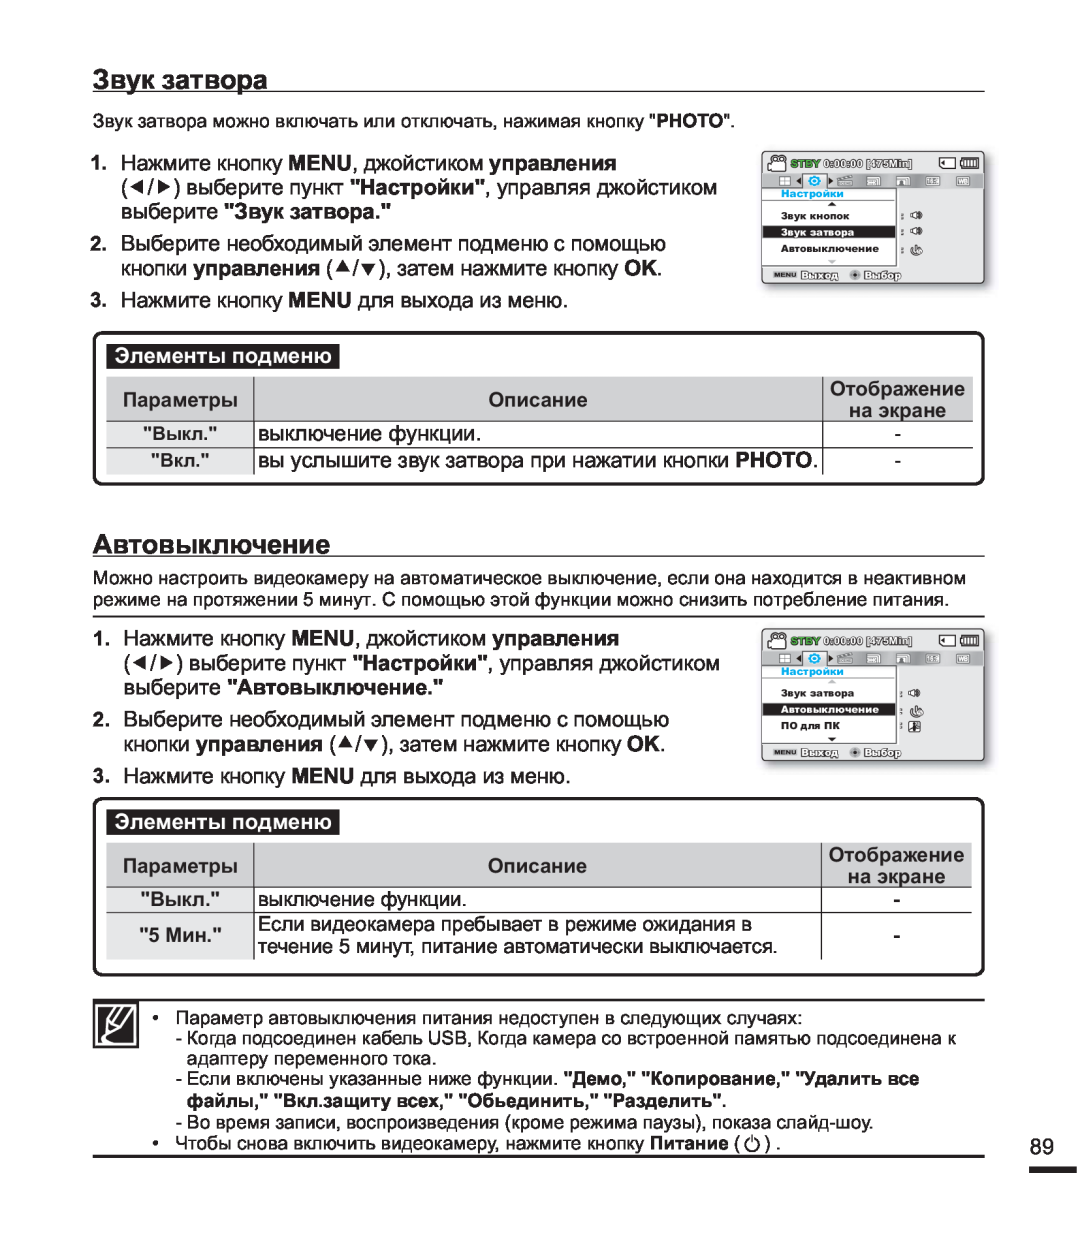 Samsung SMX-F40BP/XEK, SMX-F44BP/EDC manual ɜɵɛɟɪɢɬɟɁɜɭɤɡɚɬɜɨɪɚ, ɜɵɛɟɪɢɬɟȺɜɬɨɜɵɤɥɸɱɟɧɢɟ, ɗɥɟɦɟɧɬɵɩɨɞɦɟɧɸ 